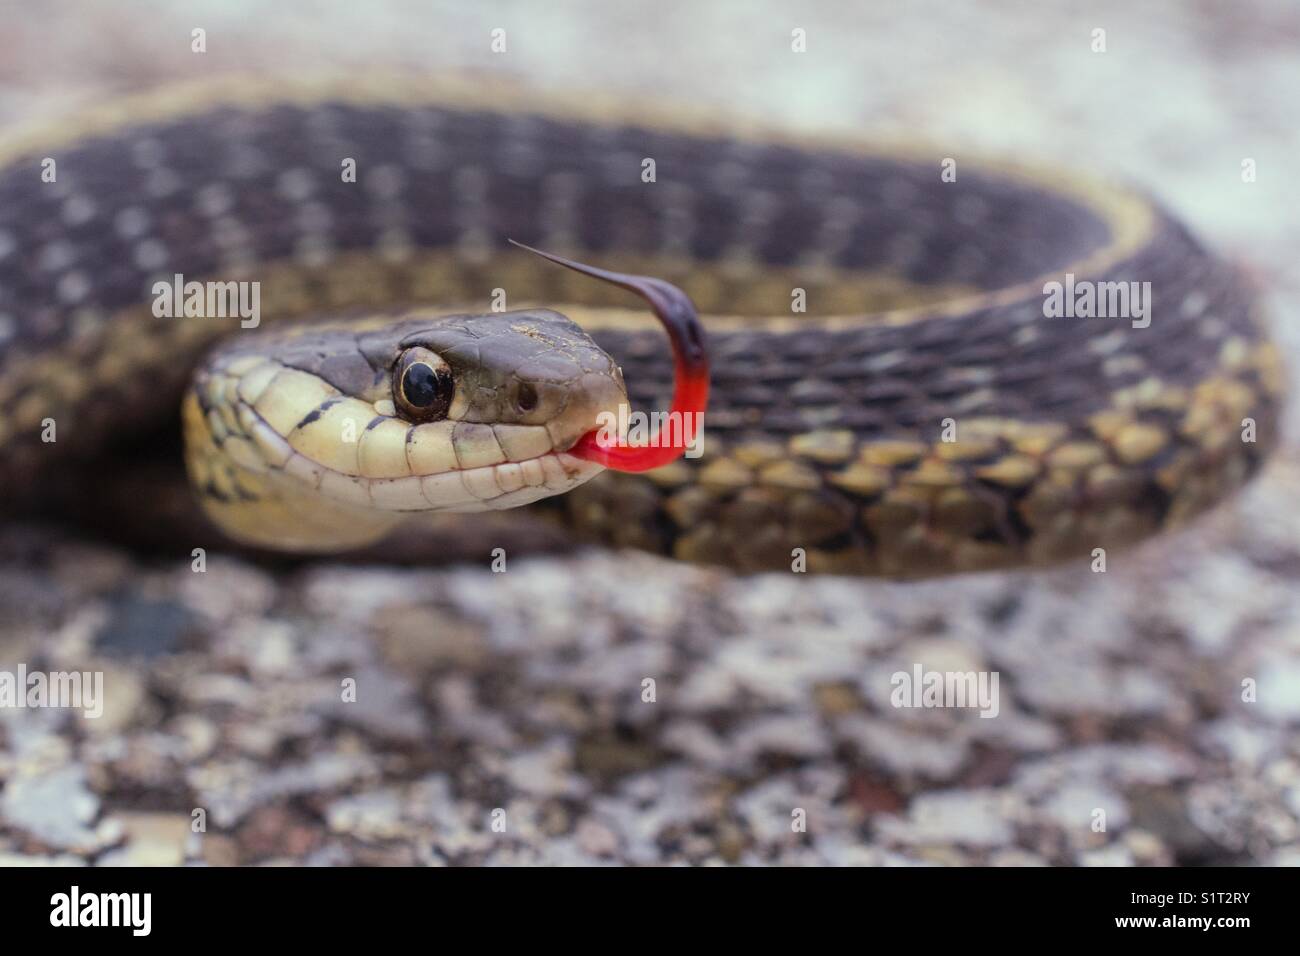 Kleine garter Snake auf einer Fahrbahn in den Hauptrollen an der Kamera mit den gespaltene Zunge heraus haften. Klasse Reptilia, Squamata, Unterordnung - serpentes, Familie colubridae,, Arten - t. sirtalis. Stockfoto